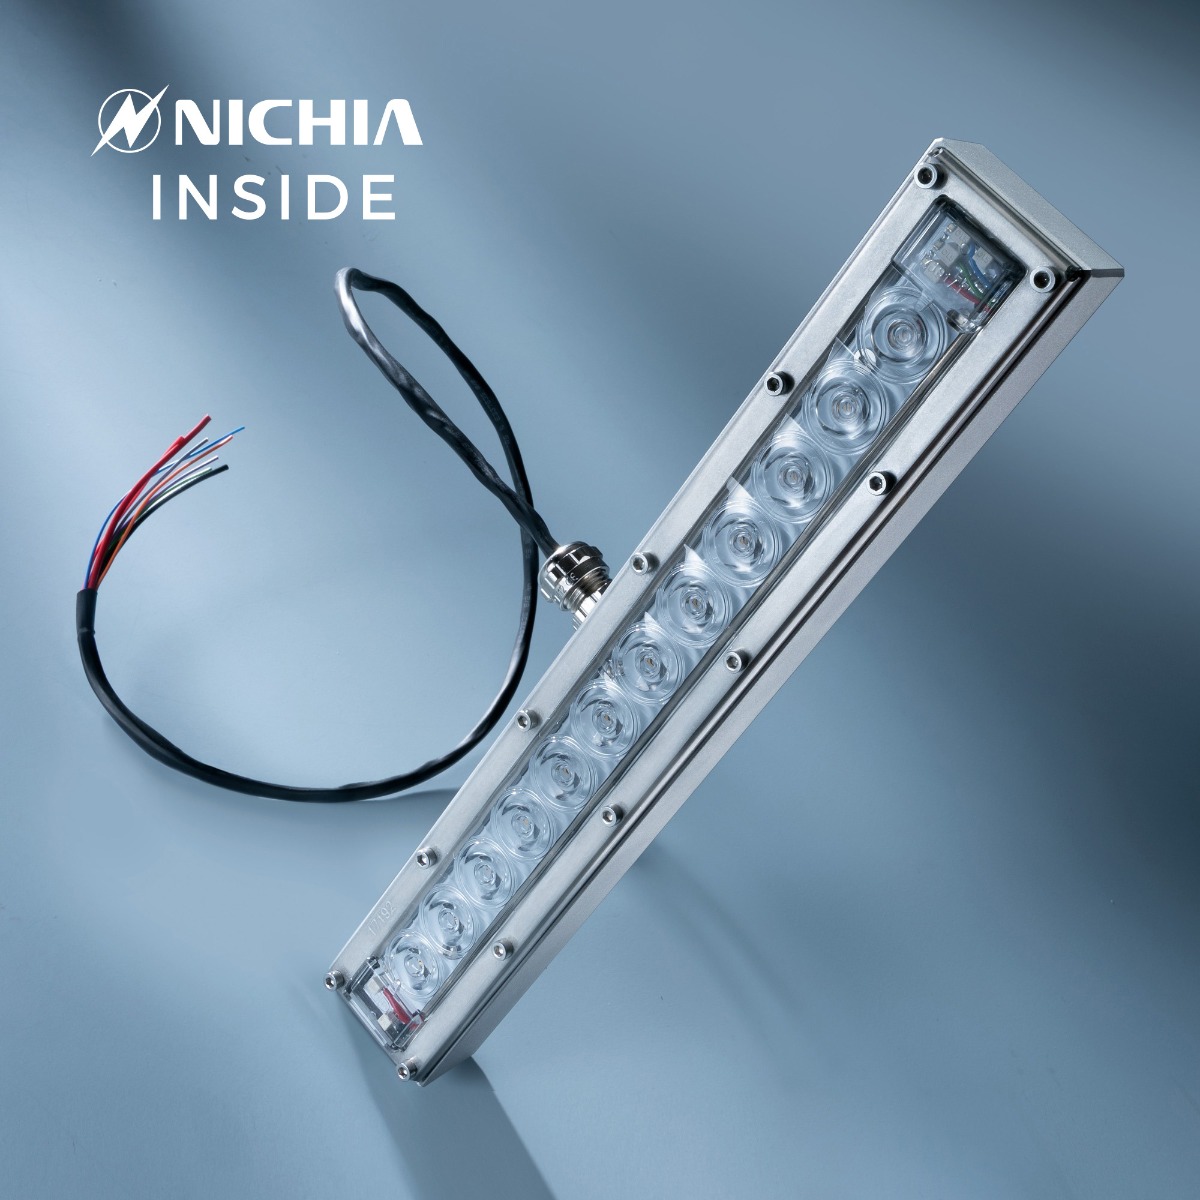 Modulo LED UVC Nichia viola 280nm 12 LED NCSU334B 630mW 29cm 48VDC IP67 con controller incluso, per disinfezione e sterilizzazione 